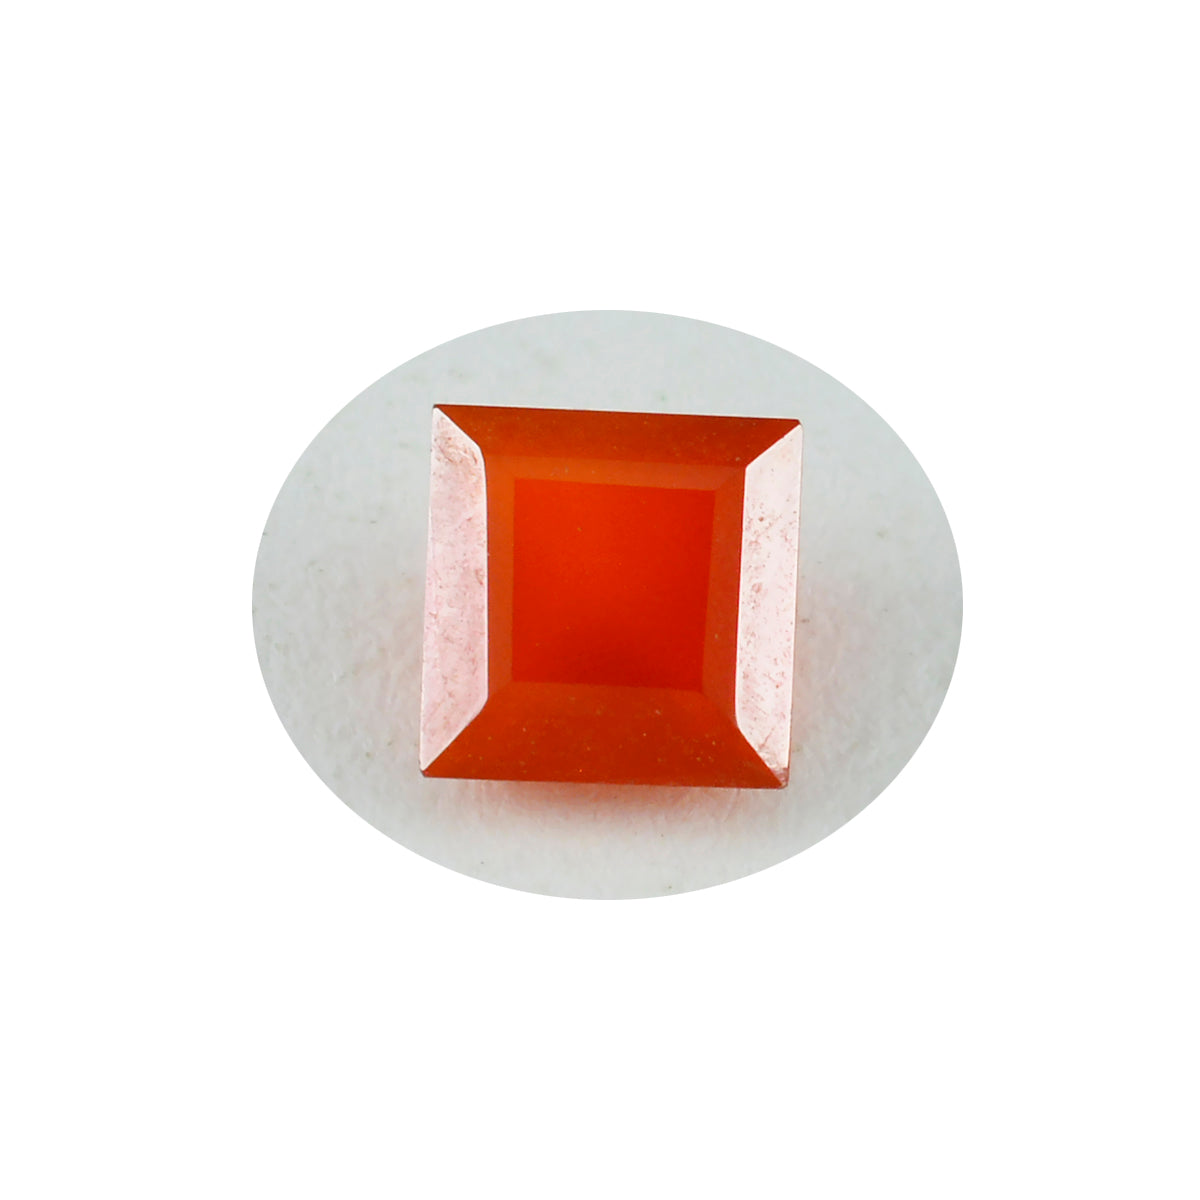 riyogems 1 шт. настоящий красный оникс граненый 10x10 мм квадратной формы красивый качественный свободный камень